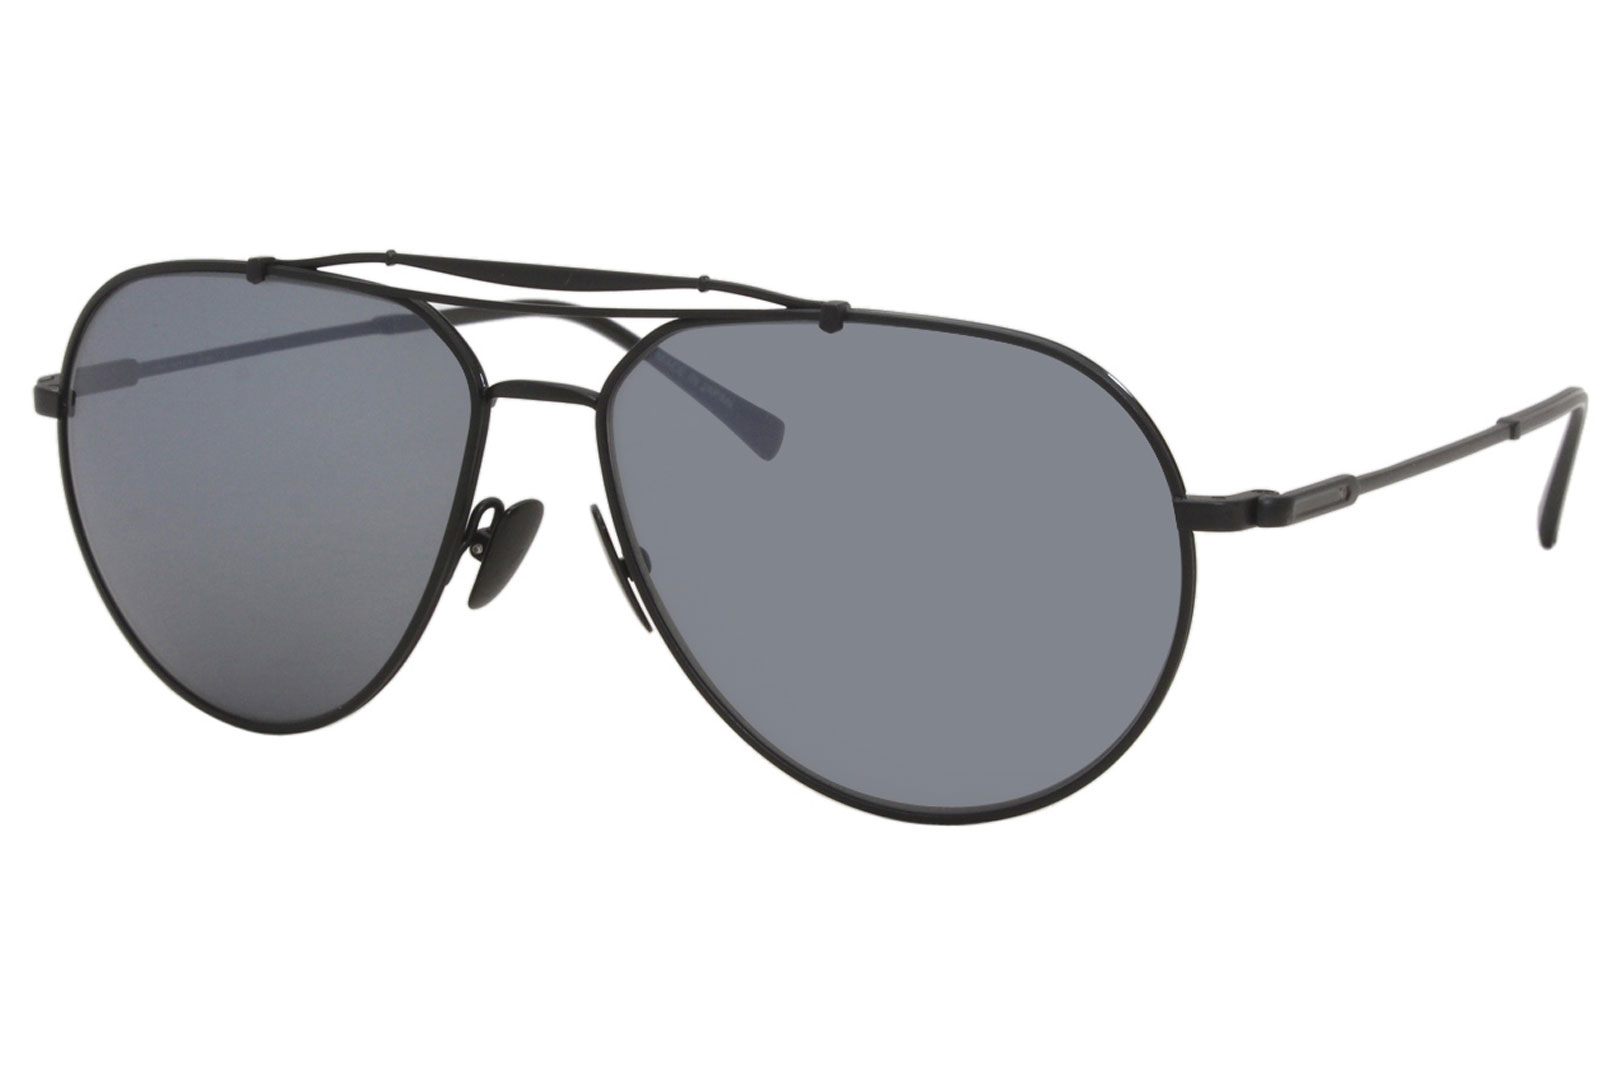 Men's Sunglasses for sale | eBay | Gold mirror sunglasses, Mirrored  sunglasses, Silver mirrored aviator sunglasses